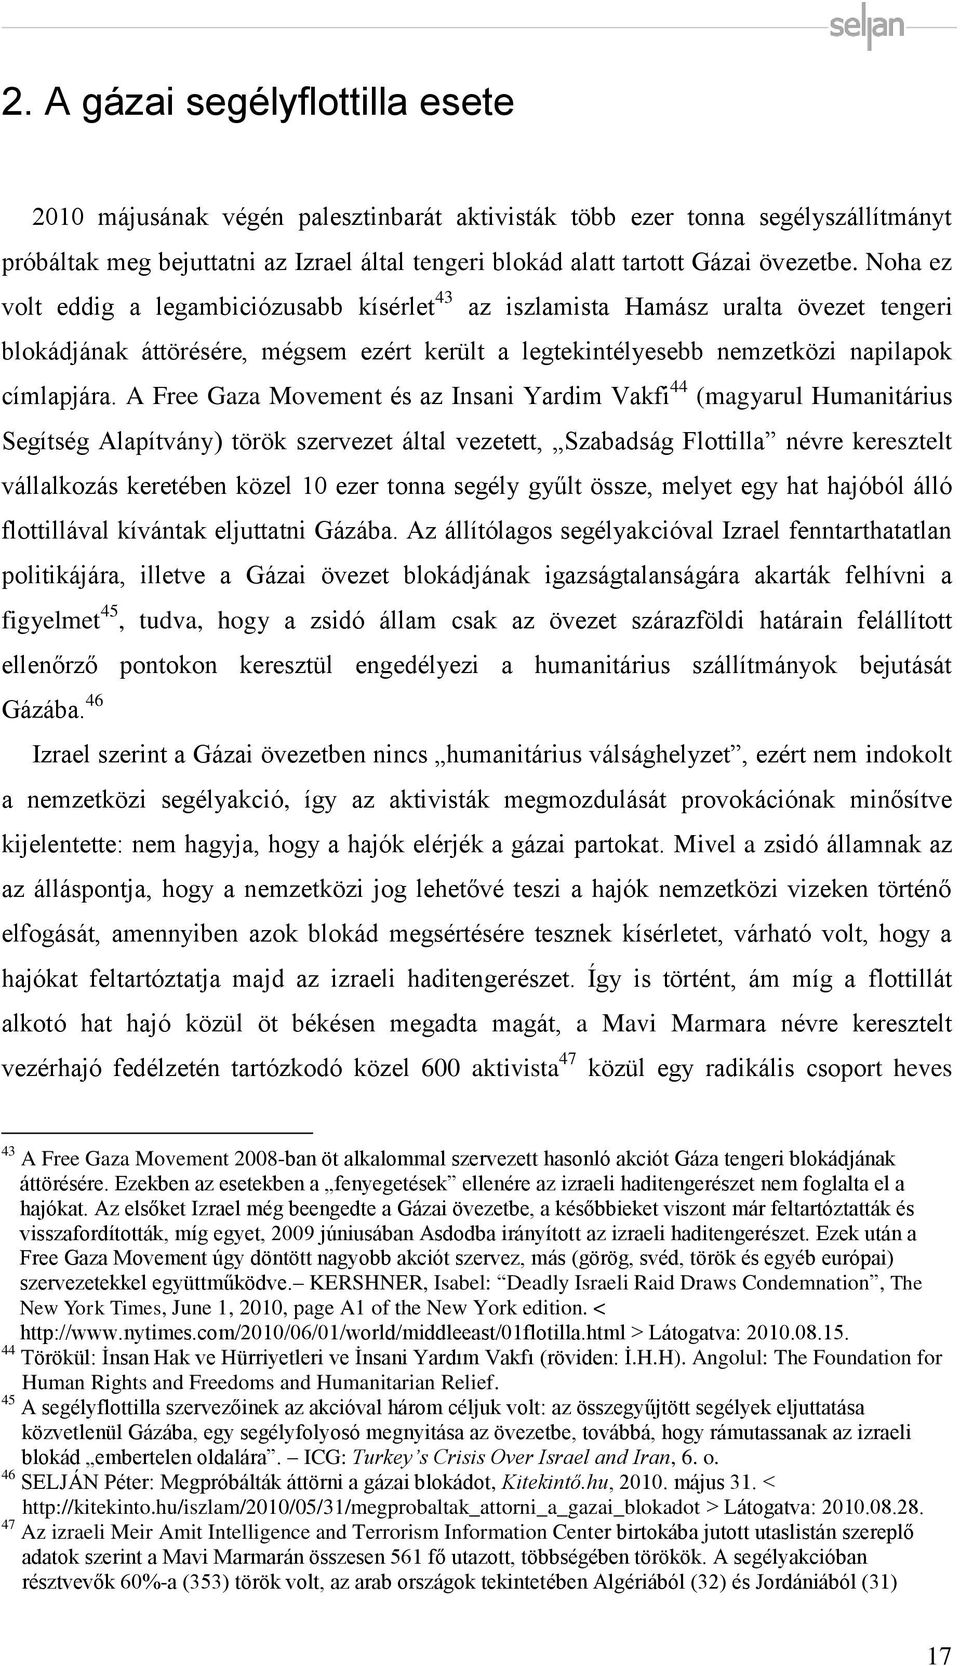 A Free Gaza Movement és az Insani Yardim Vakfi 44 (magyarul Humanitárius Segítség Alapítvány) török szervezet által vezetett, Szabadság Flottilla névre keresztelt vállalkozás keretében közel 10 ezer